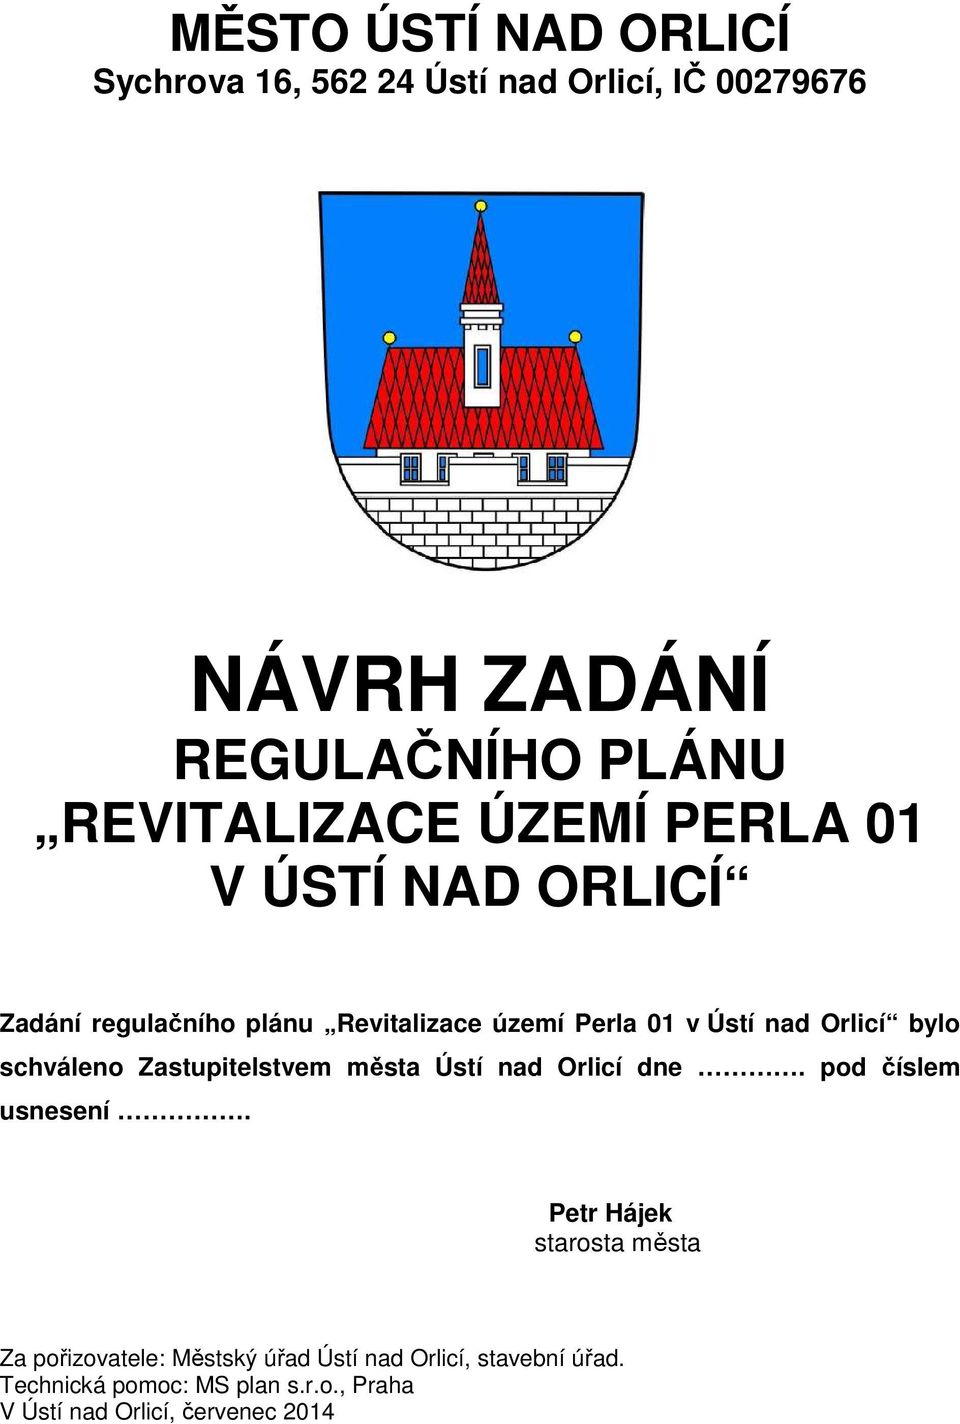 schváleno Zastupitelstvem města Ústí nad Orlicí dne. pod číslem usnesení.